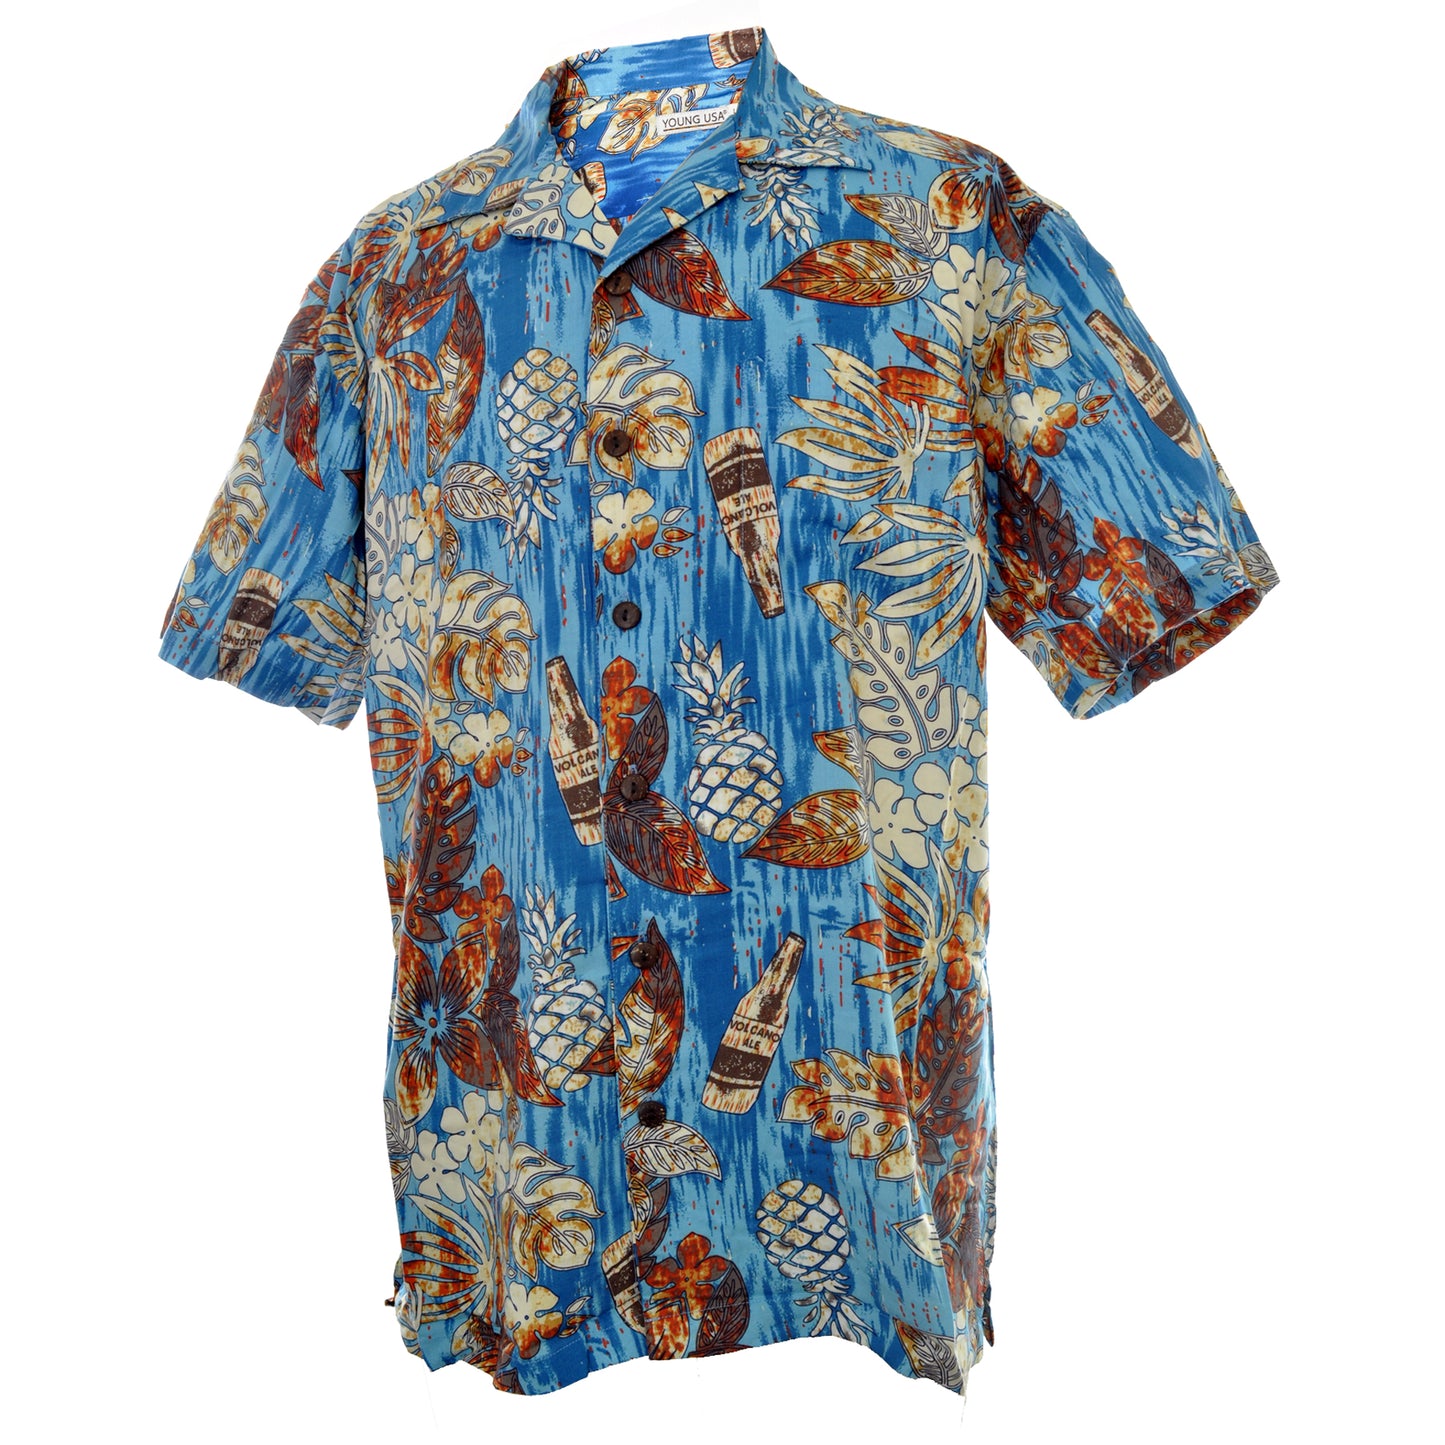 Men's Hawaiian Shirt, Pineapple Beer Bottle